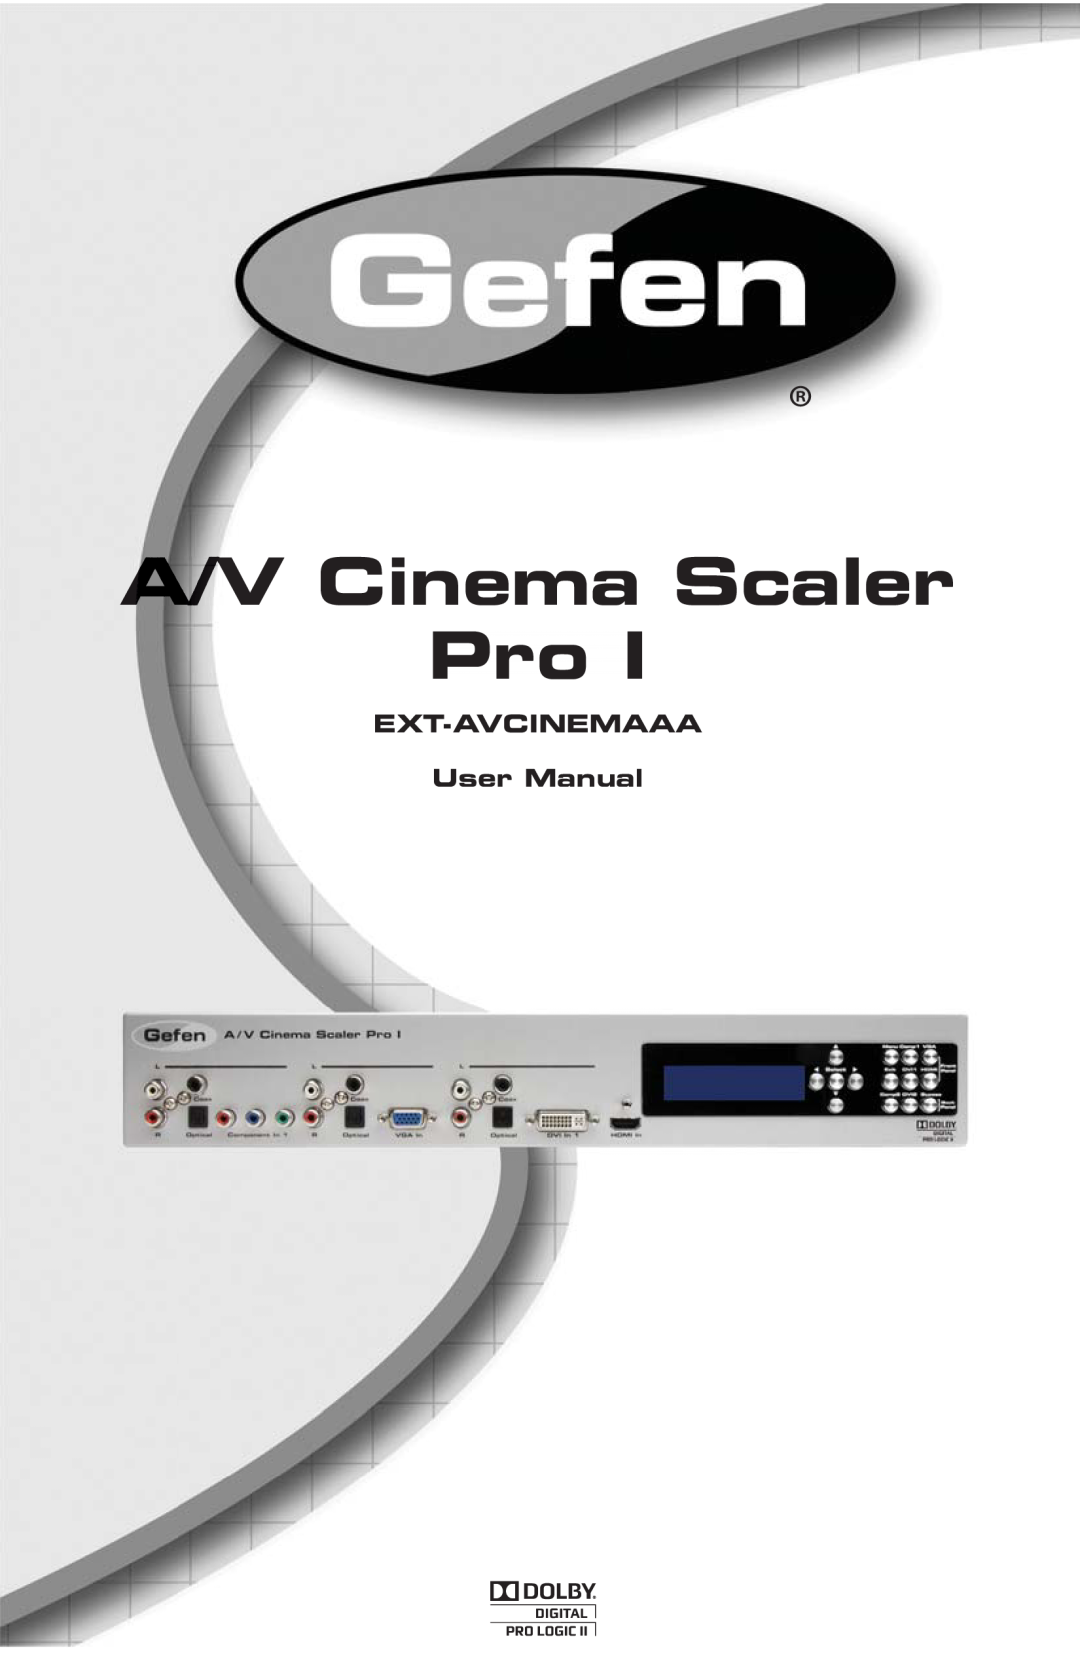 Gefen PRO I user manual A/V Cinema Scaler Pro 